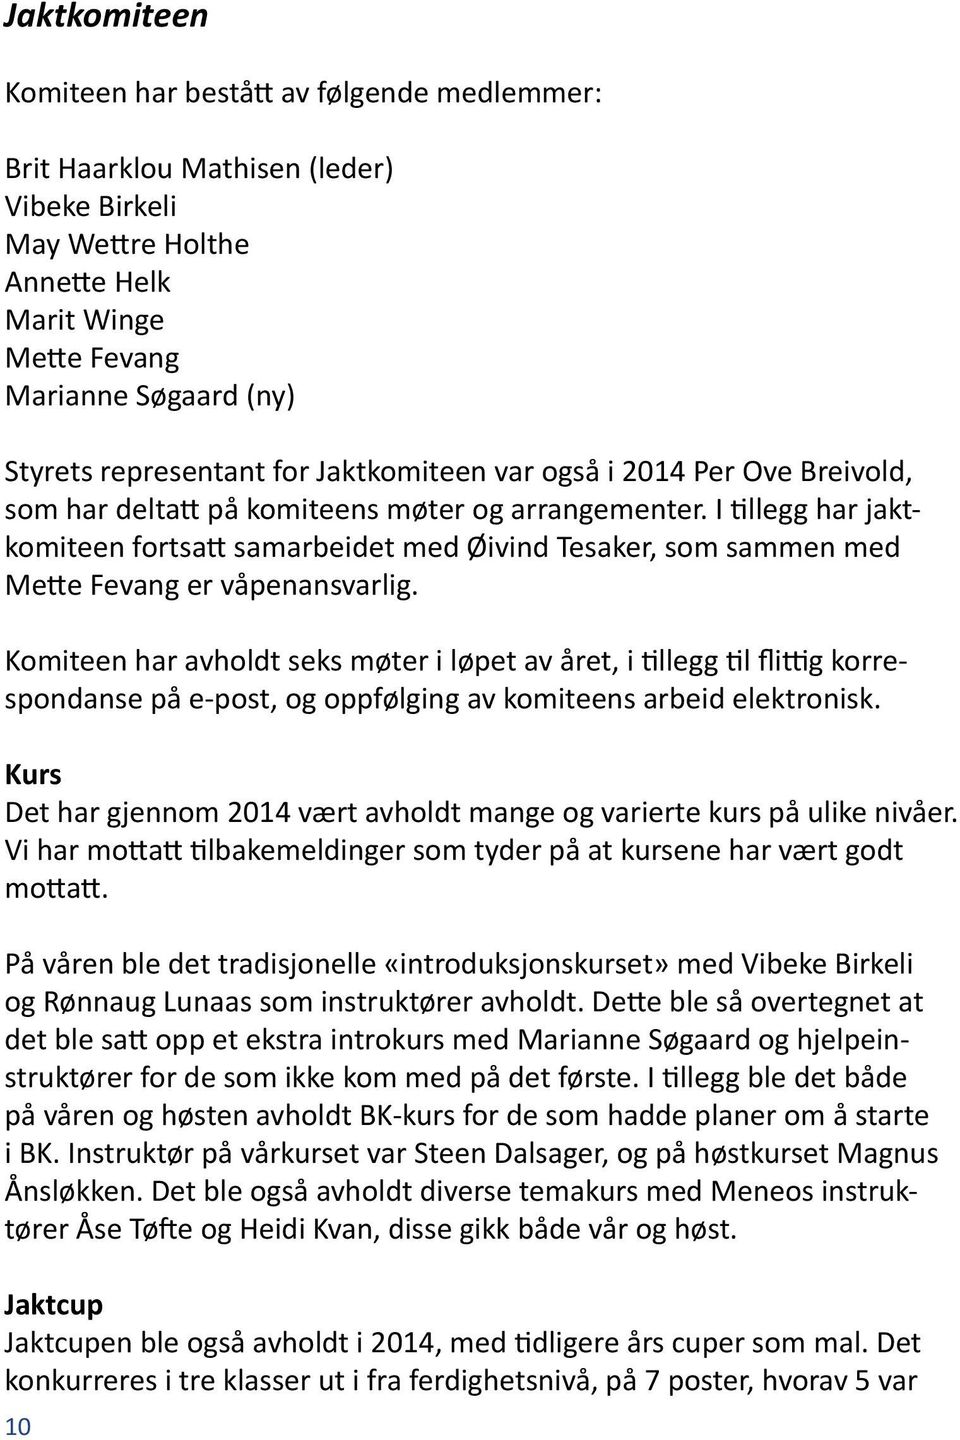 I tillegg har jaktkomiteen fortsatt samarbeidet med Øivind Tesaker, som sammen med Mette Fevang er våpenansvarlig.